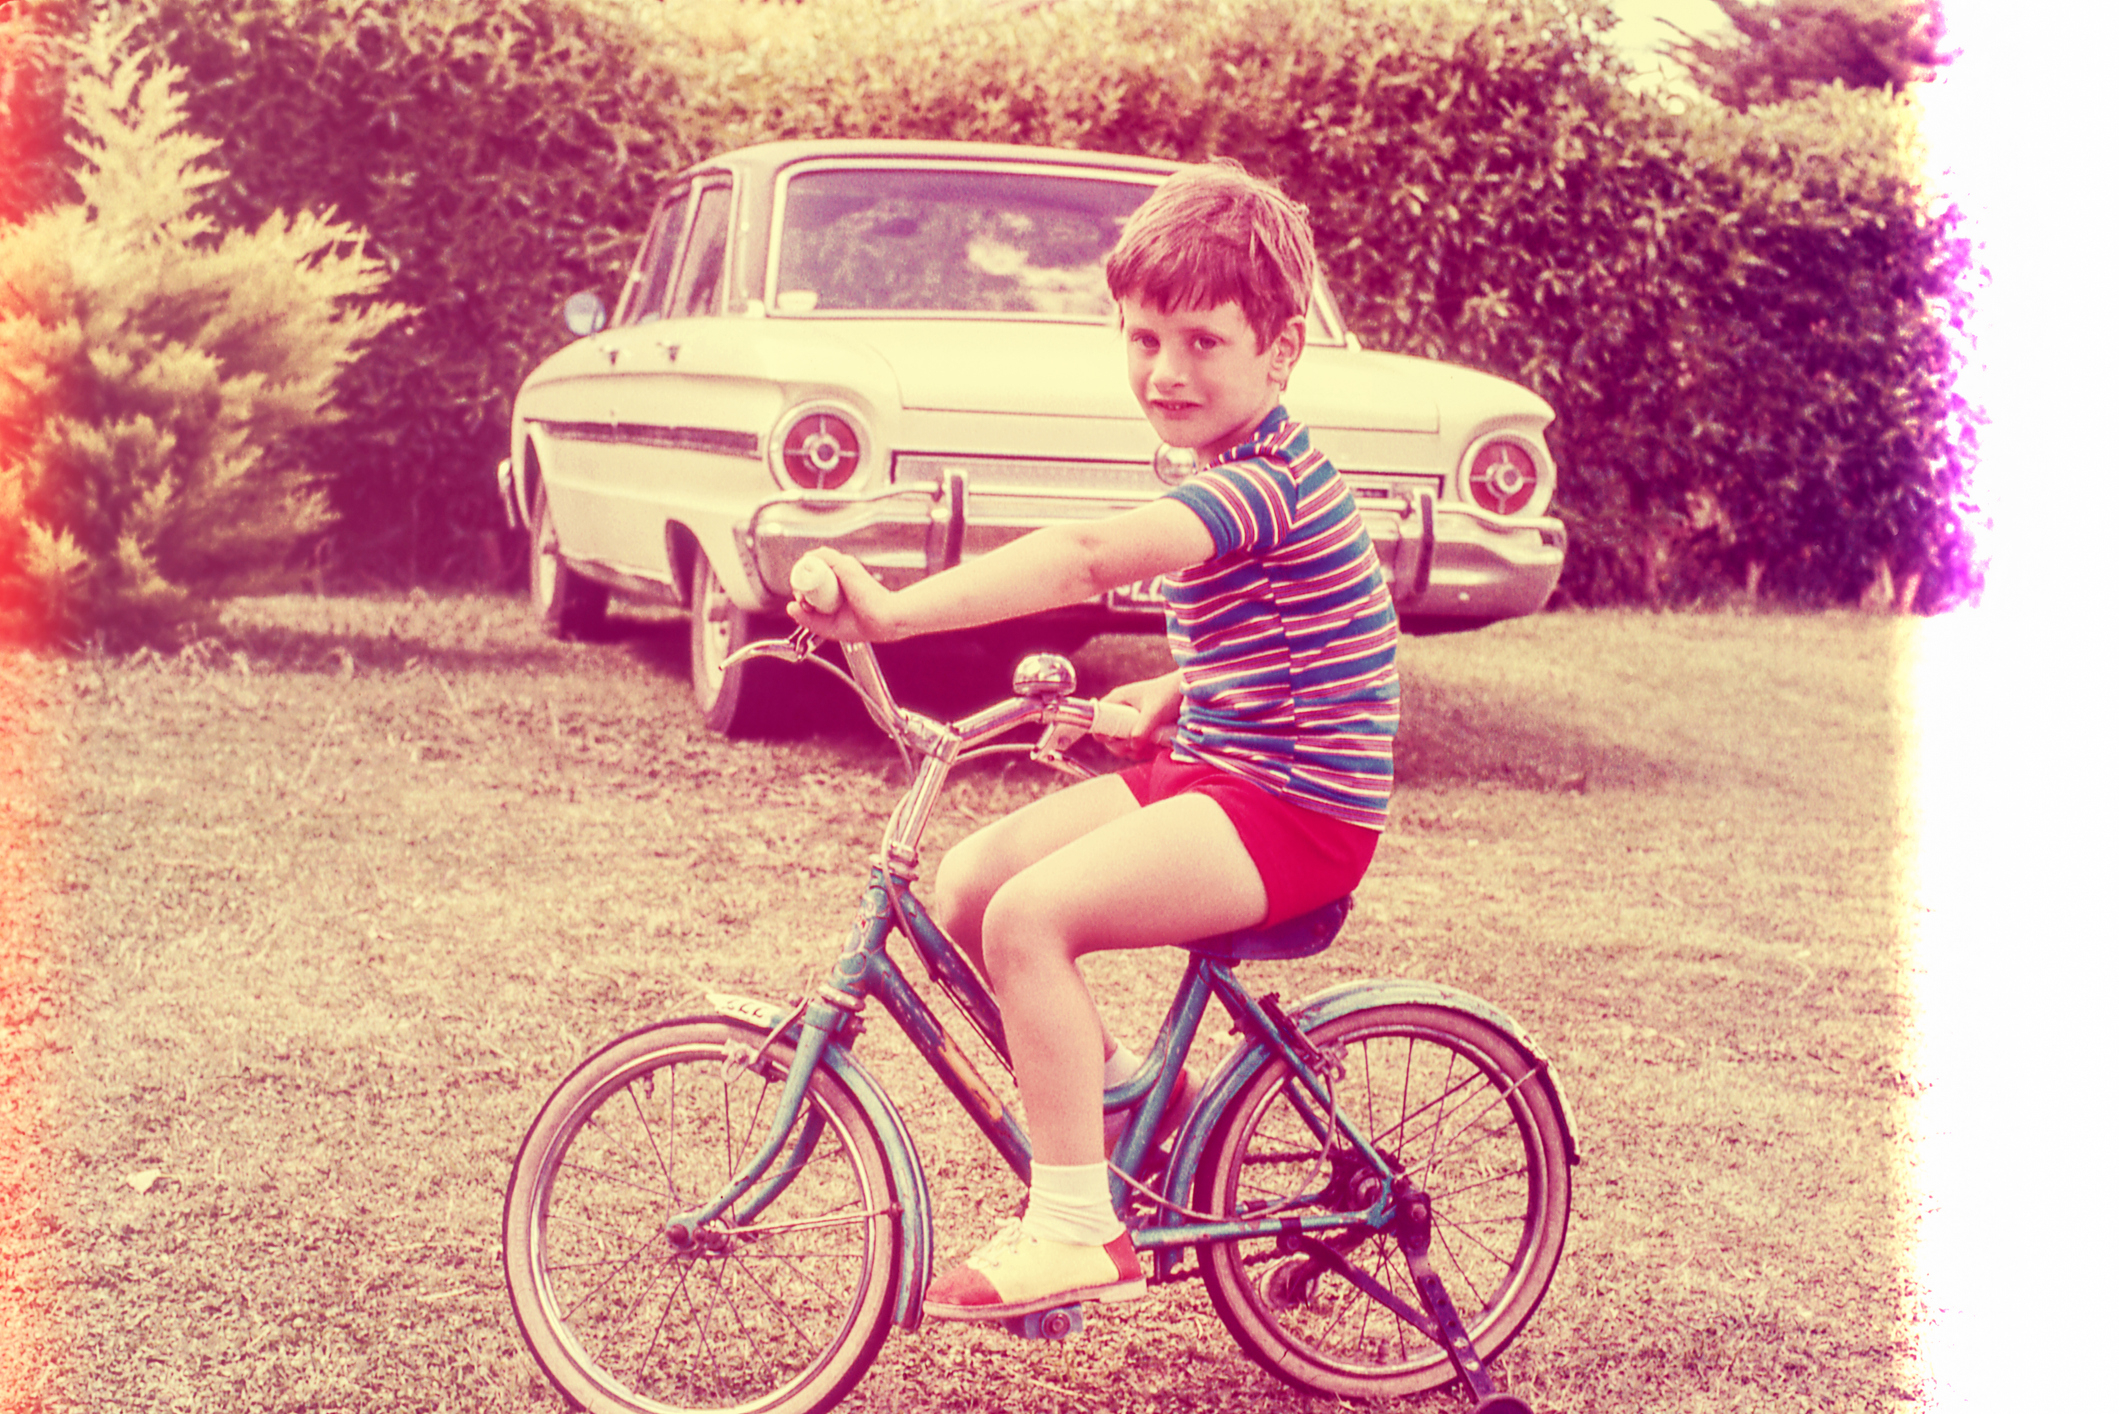 A kid riding a bike